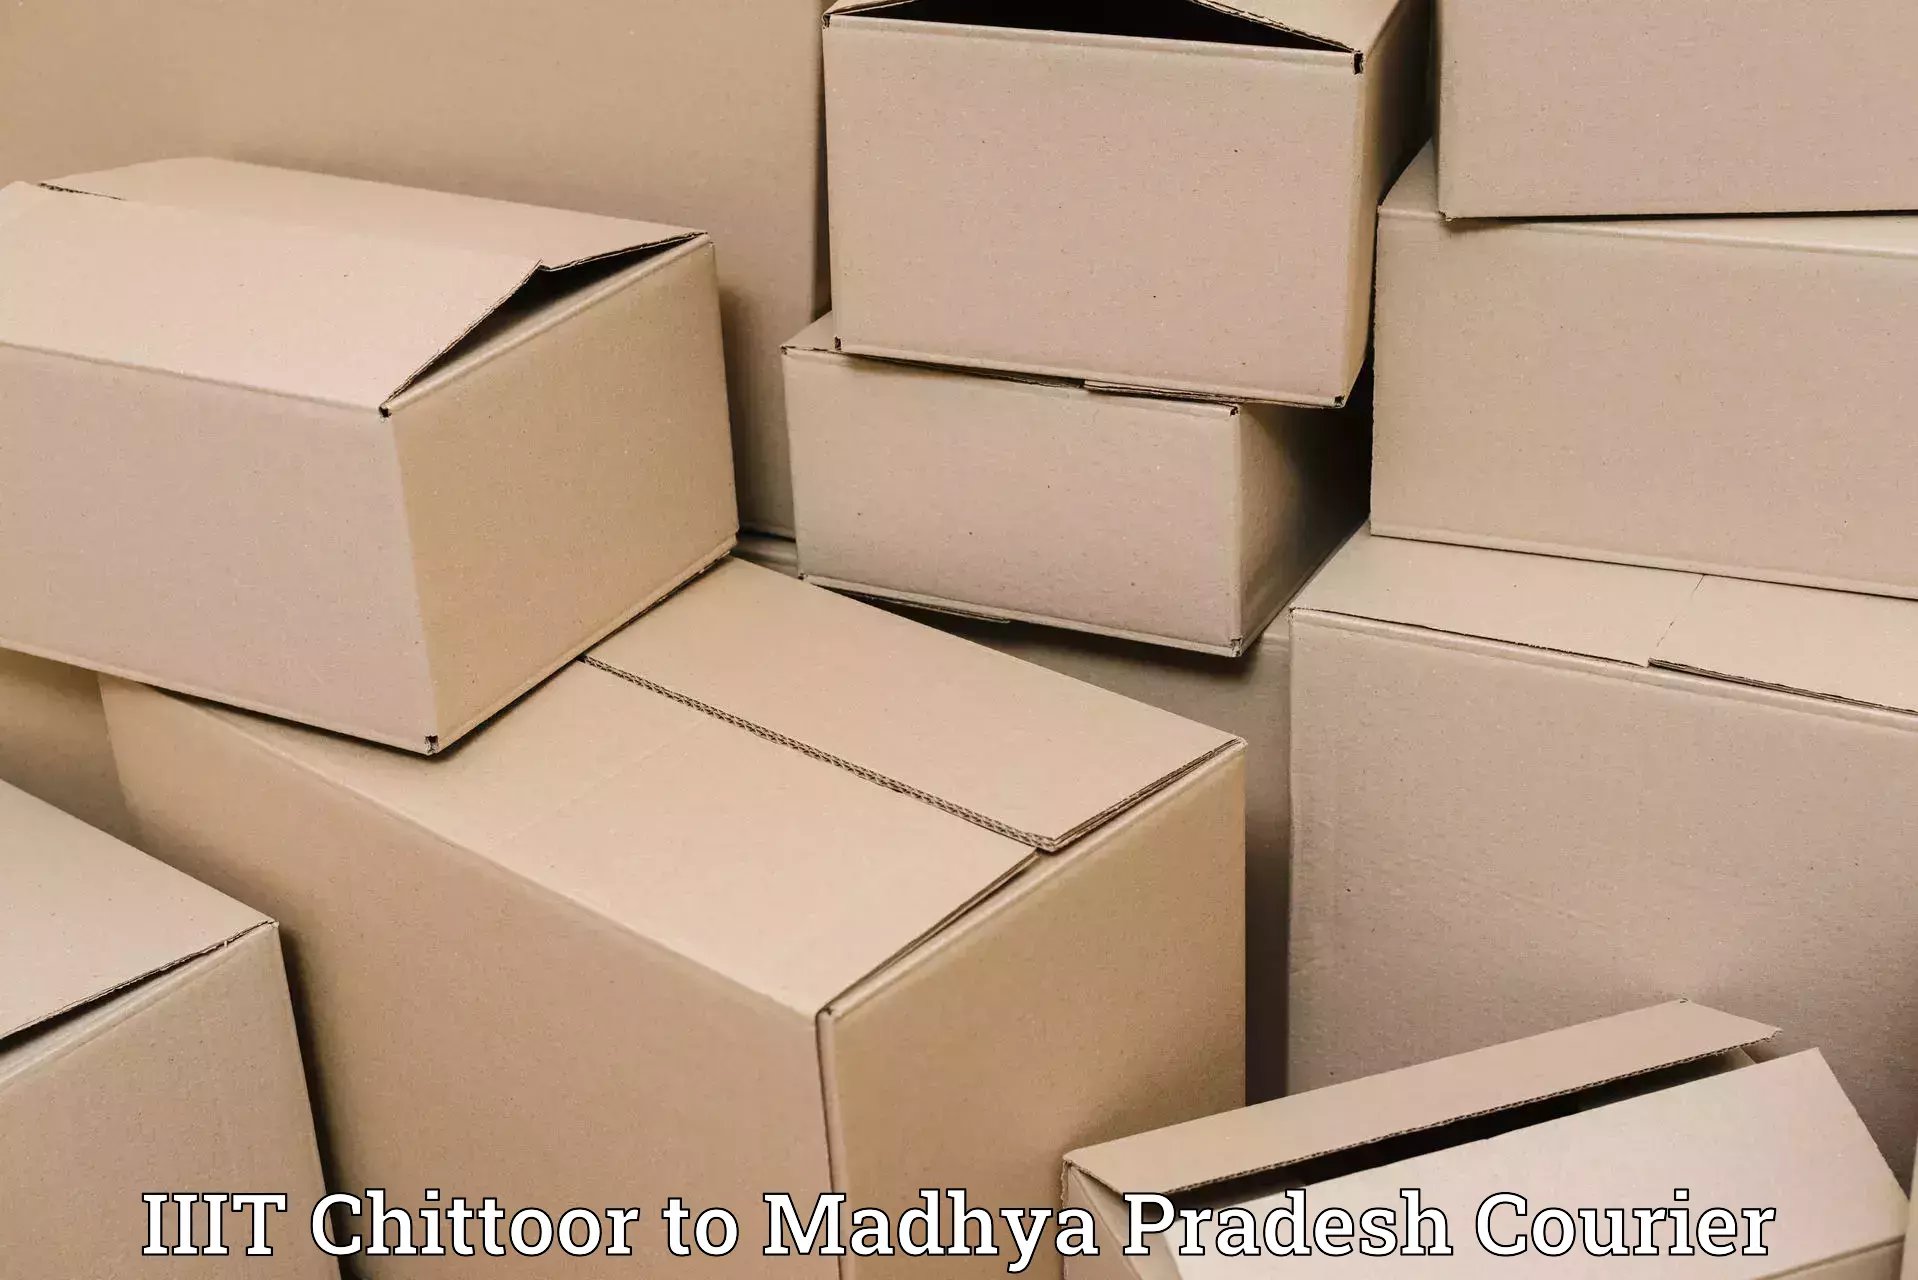 Premium courier services IIIT Chittoor to Shahgarh